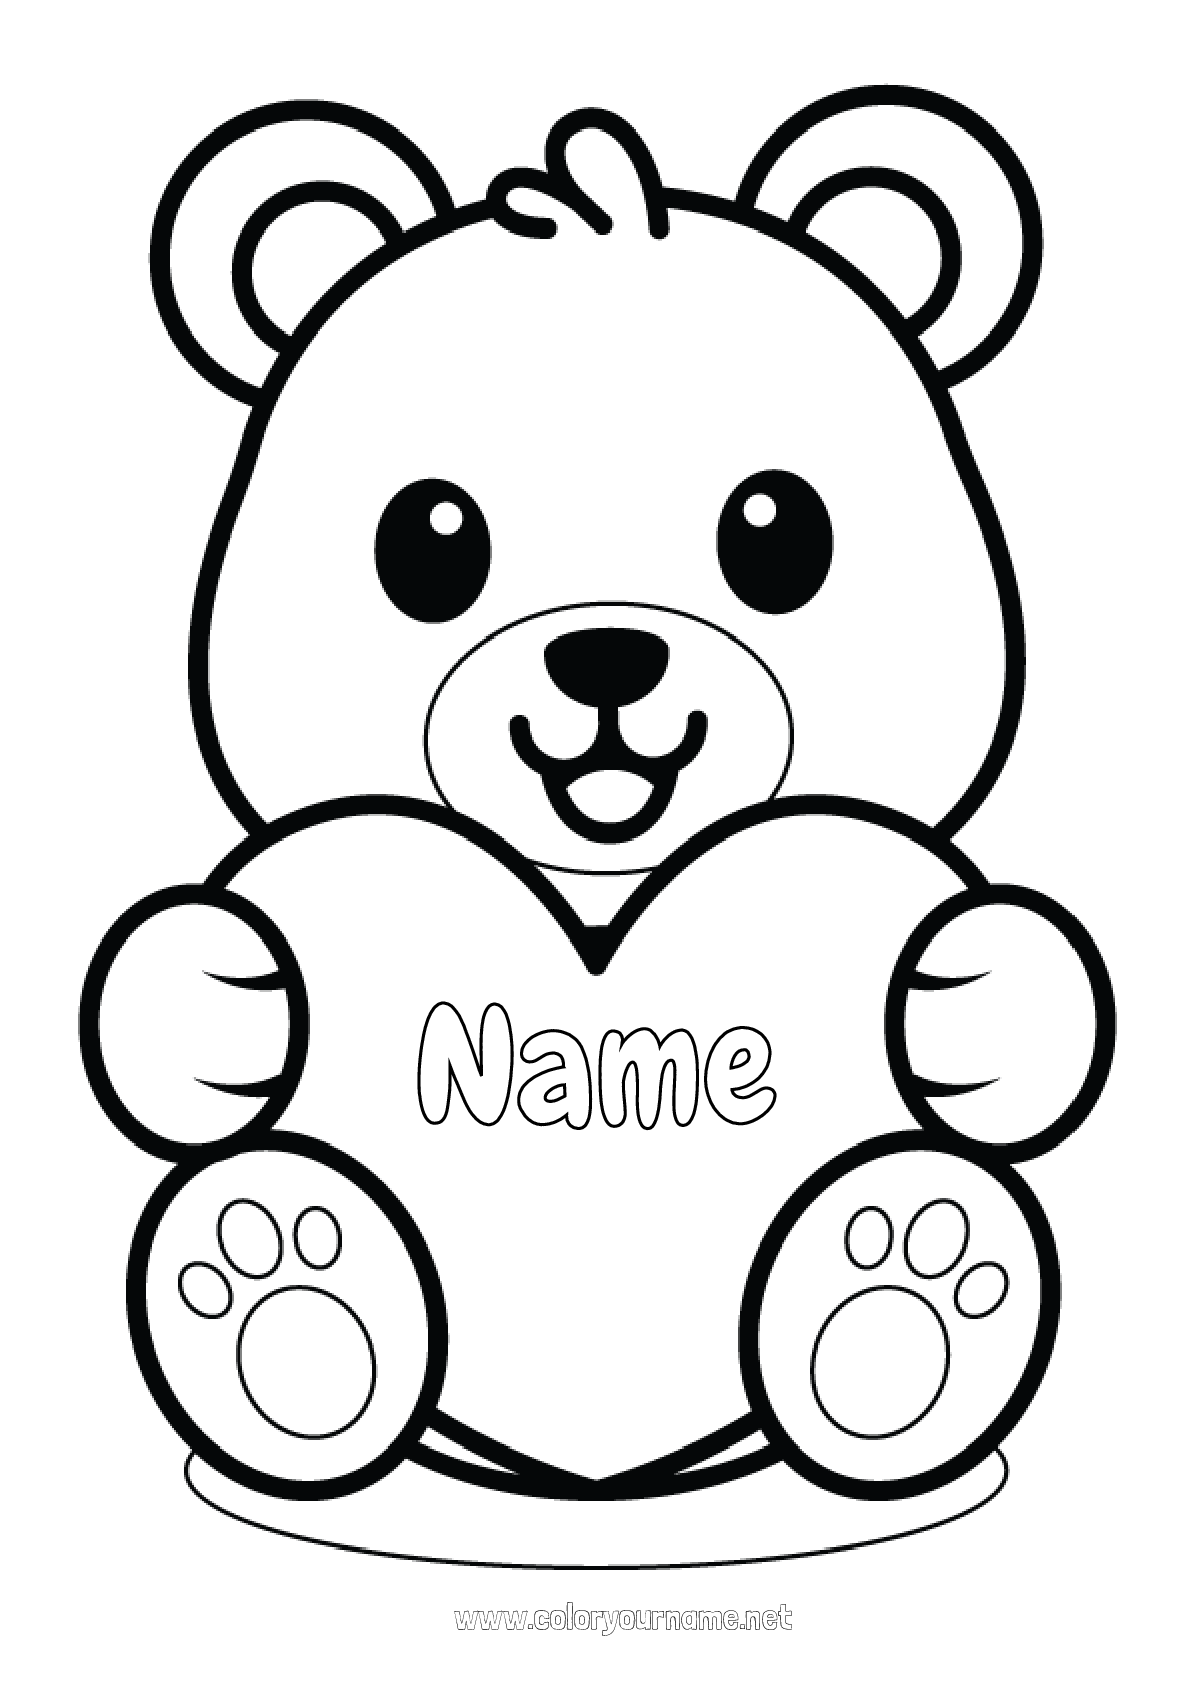 Coloring page No.2191 - Bear Cute Kawaii